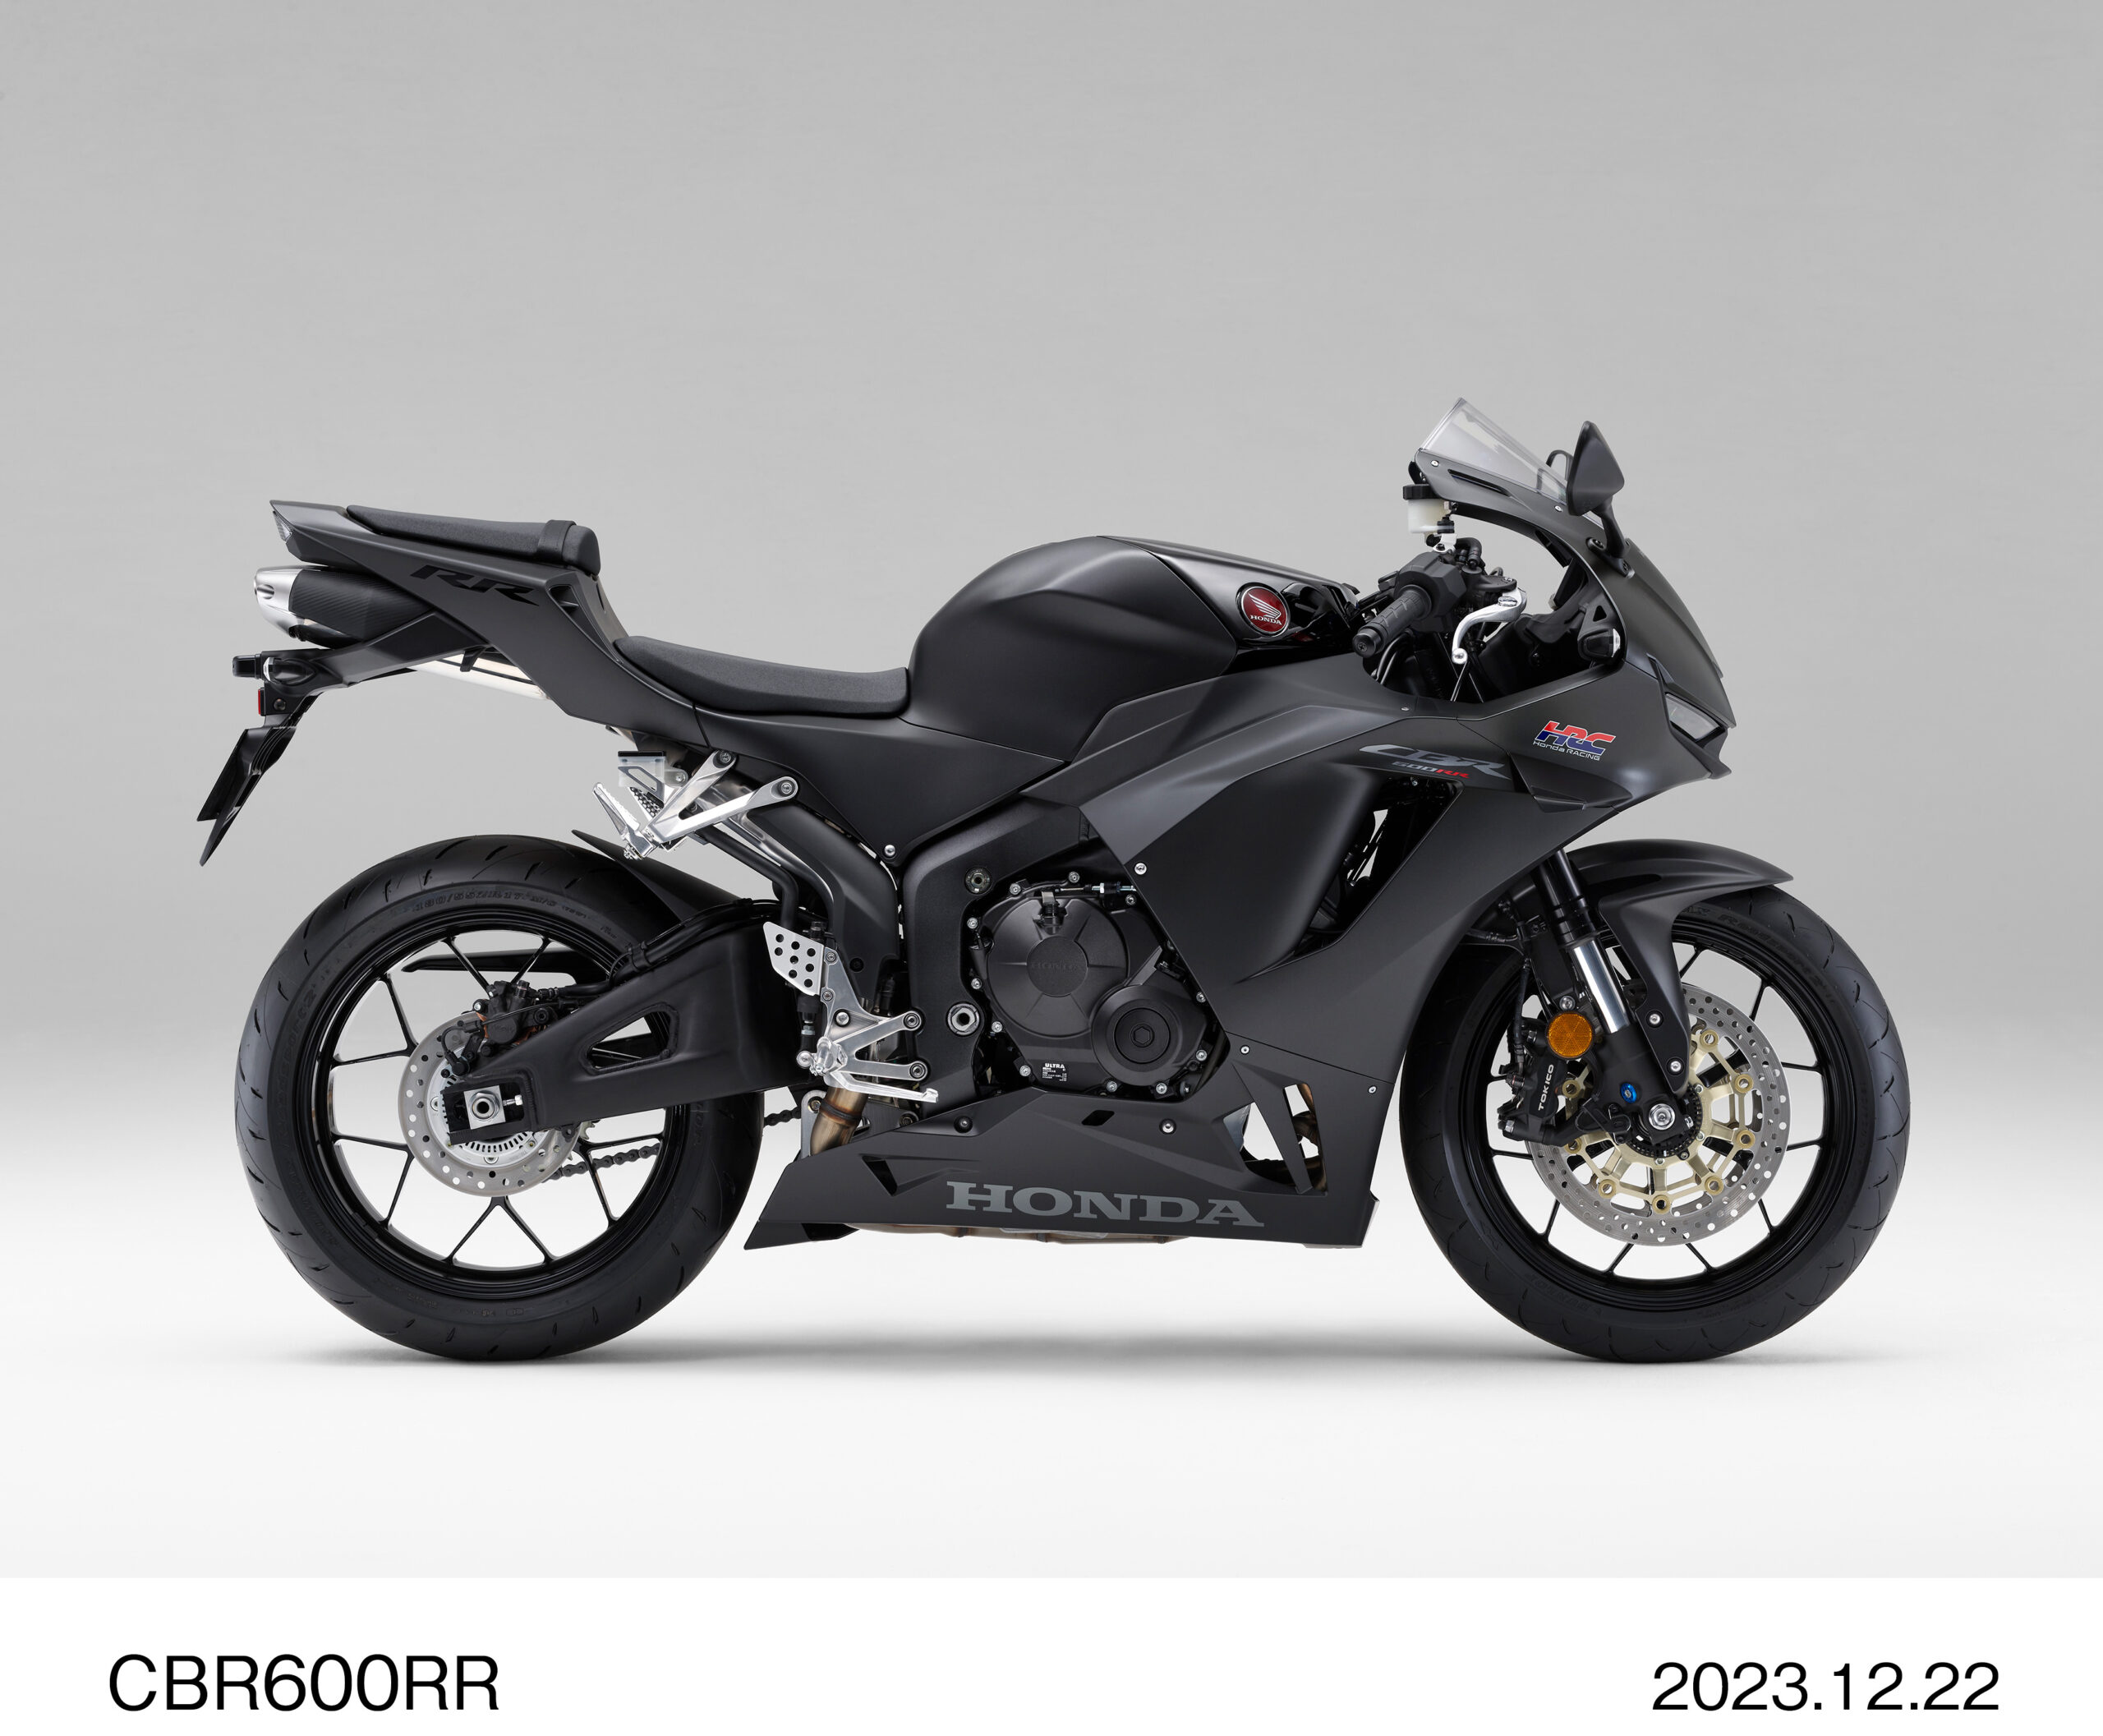 Hondaのスーパースポーツモデル「CBR600RR」が一部変更。カラーリングやデザインが変更に